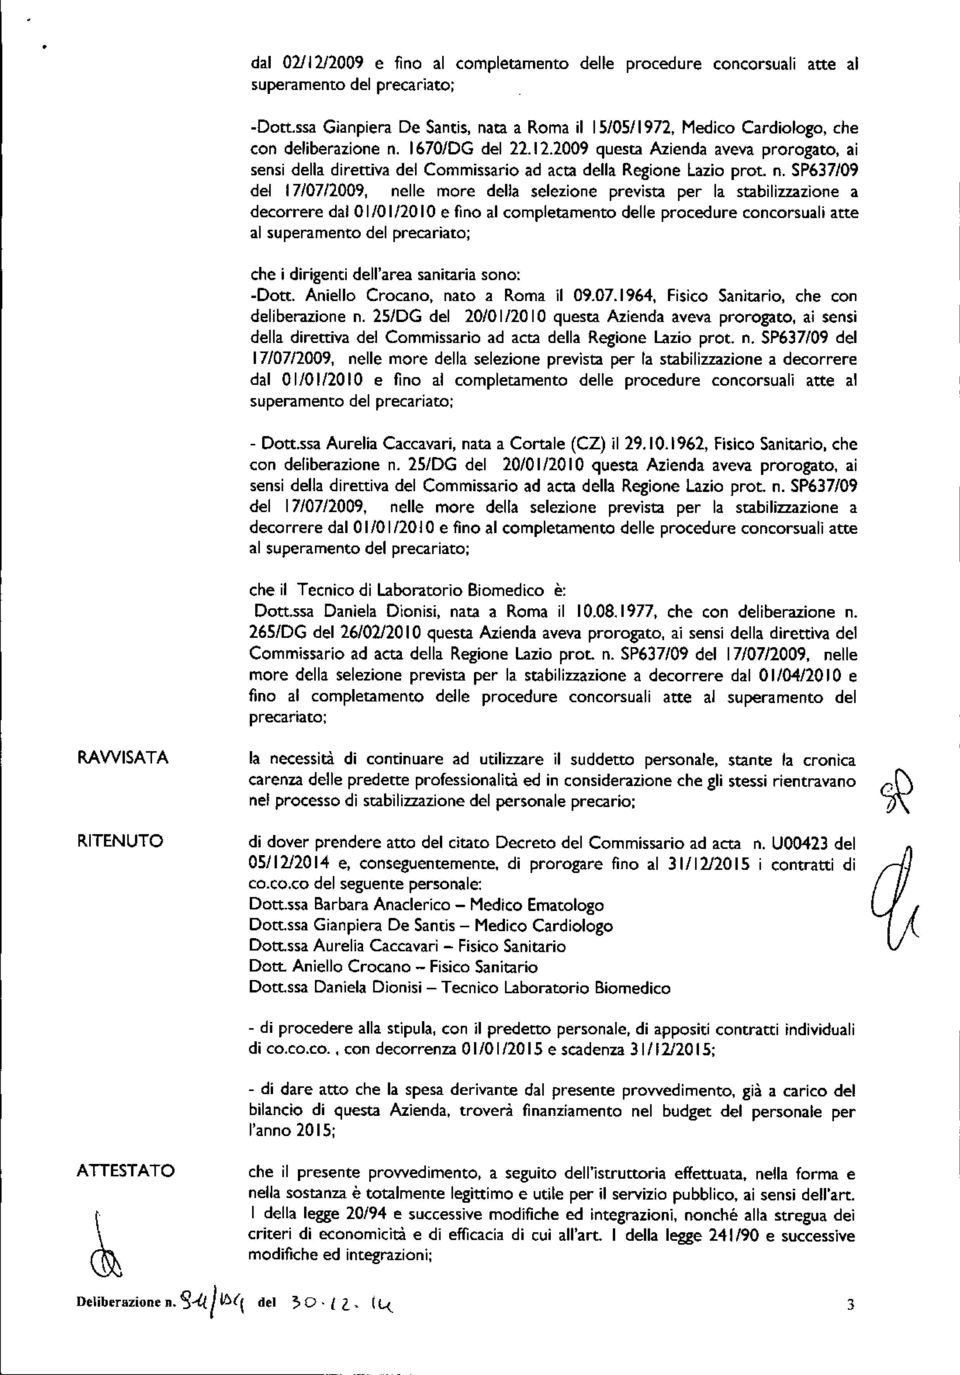 2009 questa Azienda aveva prorogato, ai sensi della direttiva del Commissario ad acta della Regione Lazio prot. n.